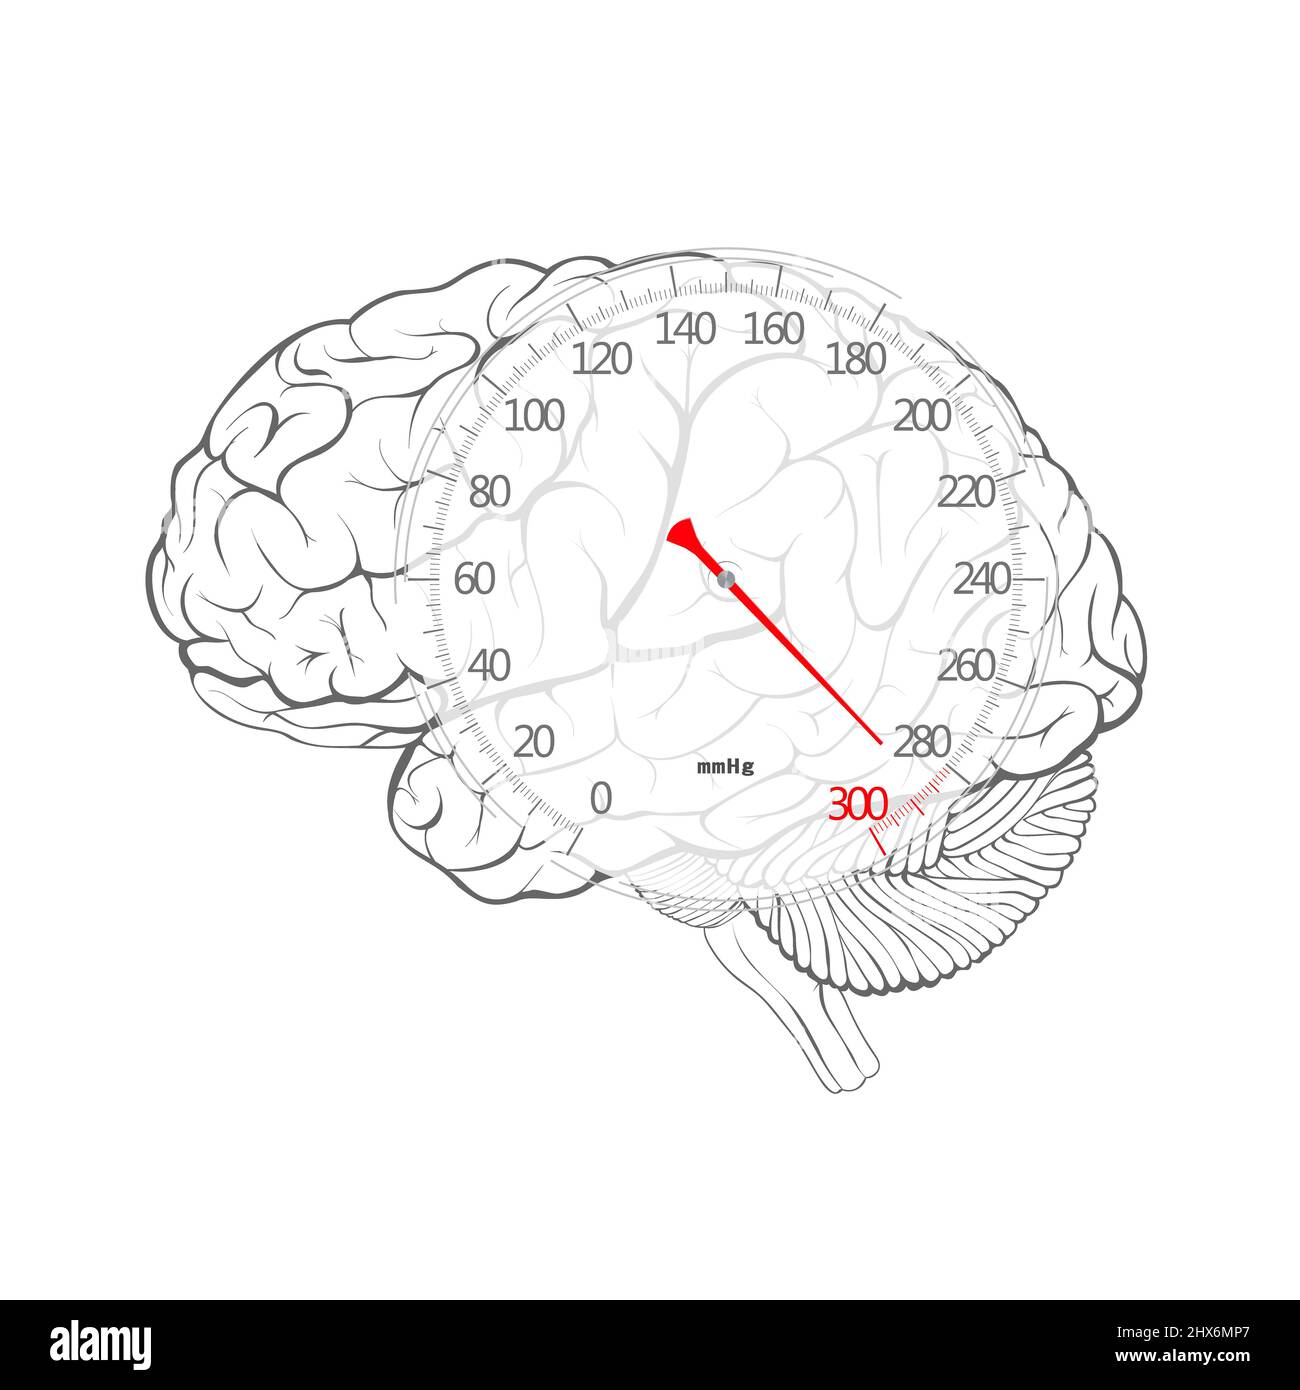 Flèche rouge du cadran de pression artérielle sur le cerveau, isolé sur fond blanc Banque D'Images